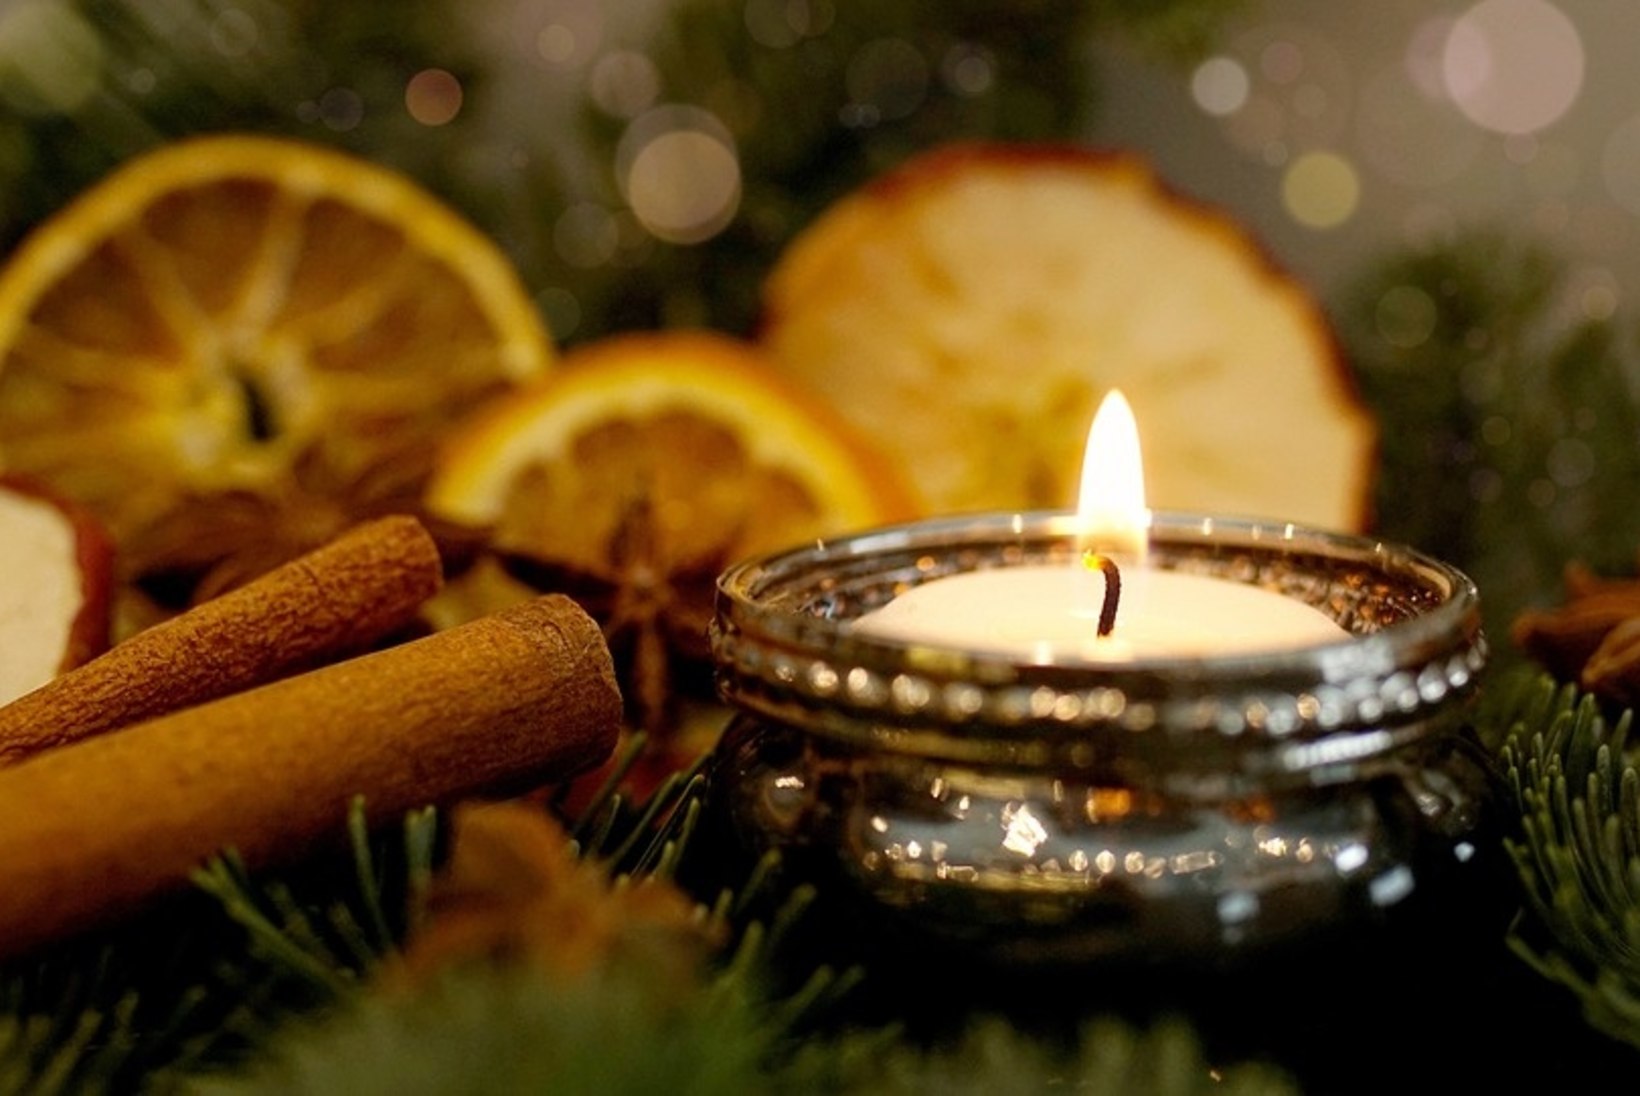 Pineenist eugenoolini – millised ained tekitavad jõululõhna?